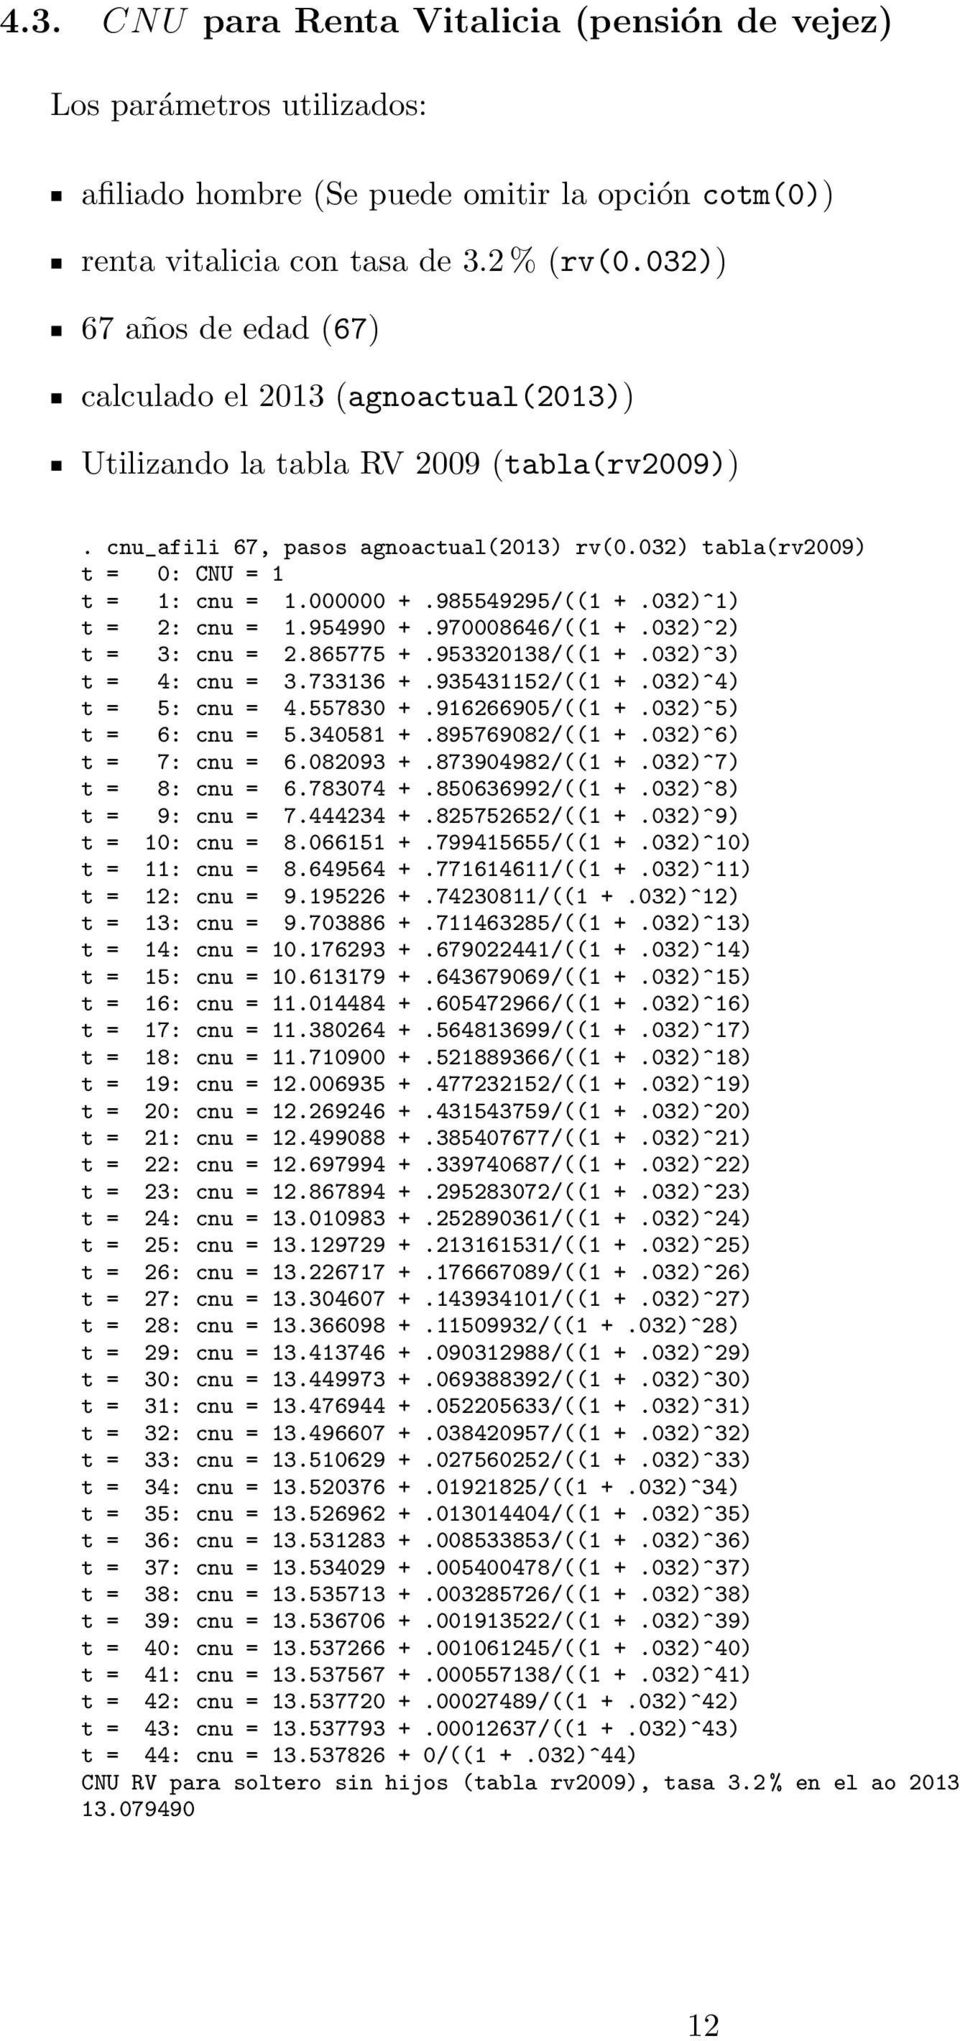 000000 +.985549295/((1 +.032)^1) t = 2: cnu = 1.954990 +.970008646/((1 +.032)^2) t = 3: cnu = 2.865775 +.953320138/((1 +.032)^3) t = 4: cnu = 3.733136 +.935431152/((1 +.032)^4) t = 5: cnu = 4.